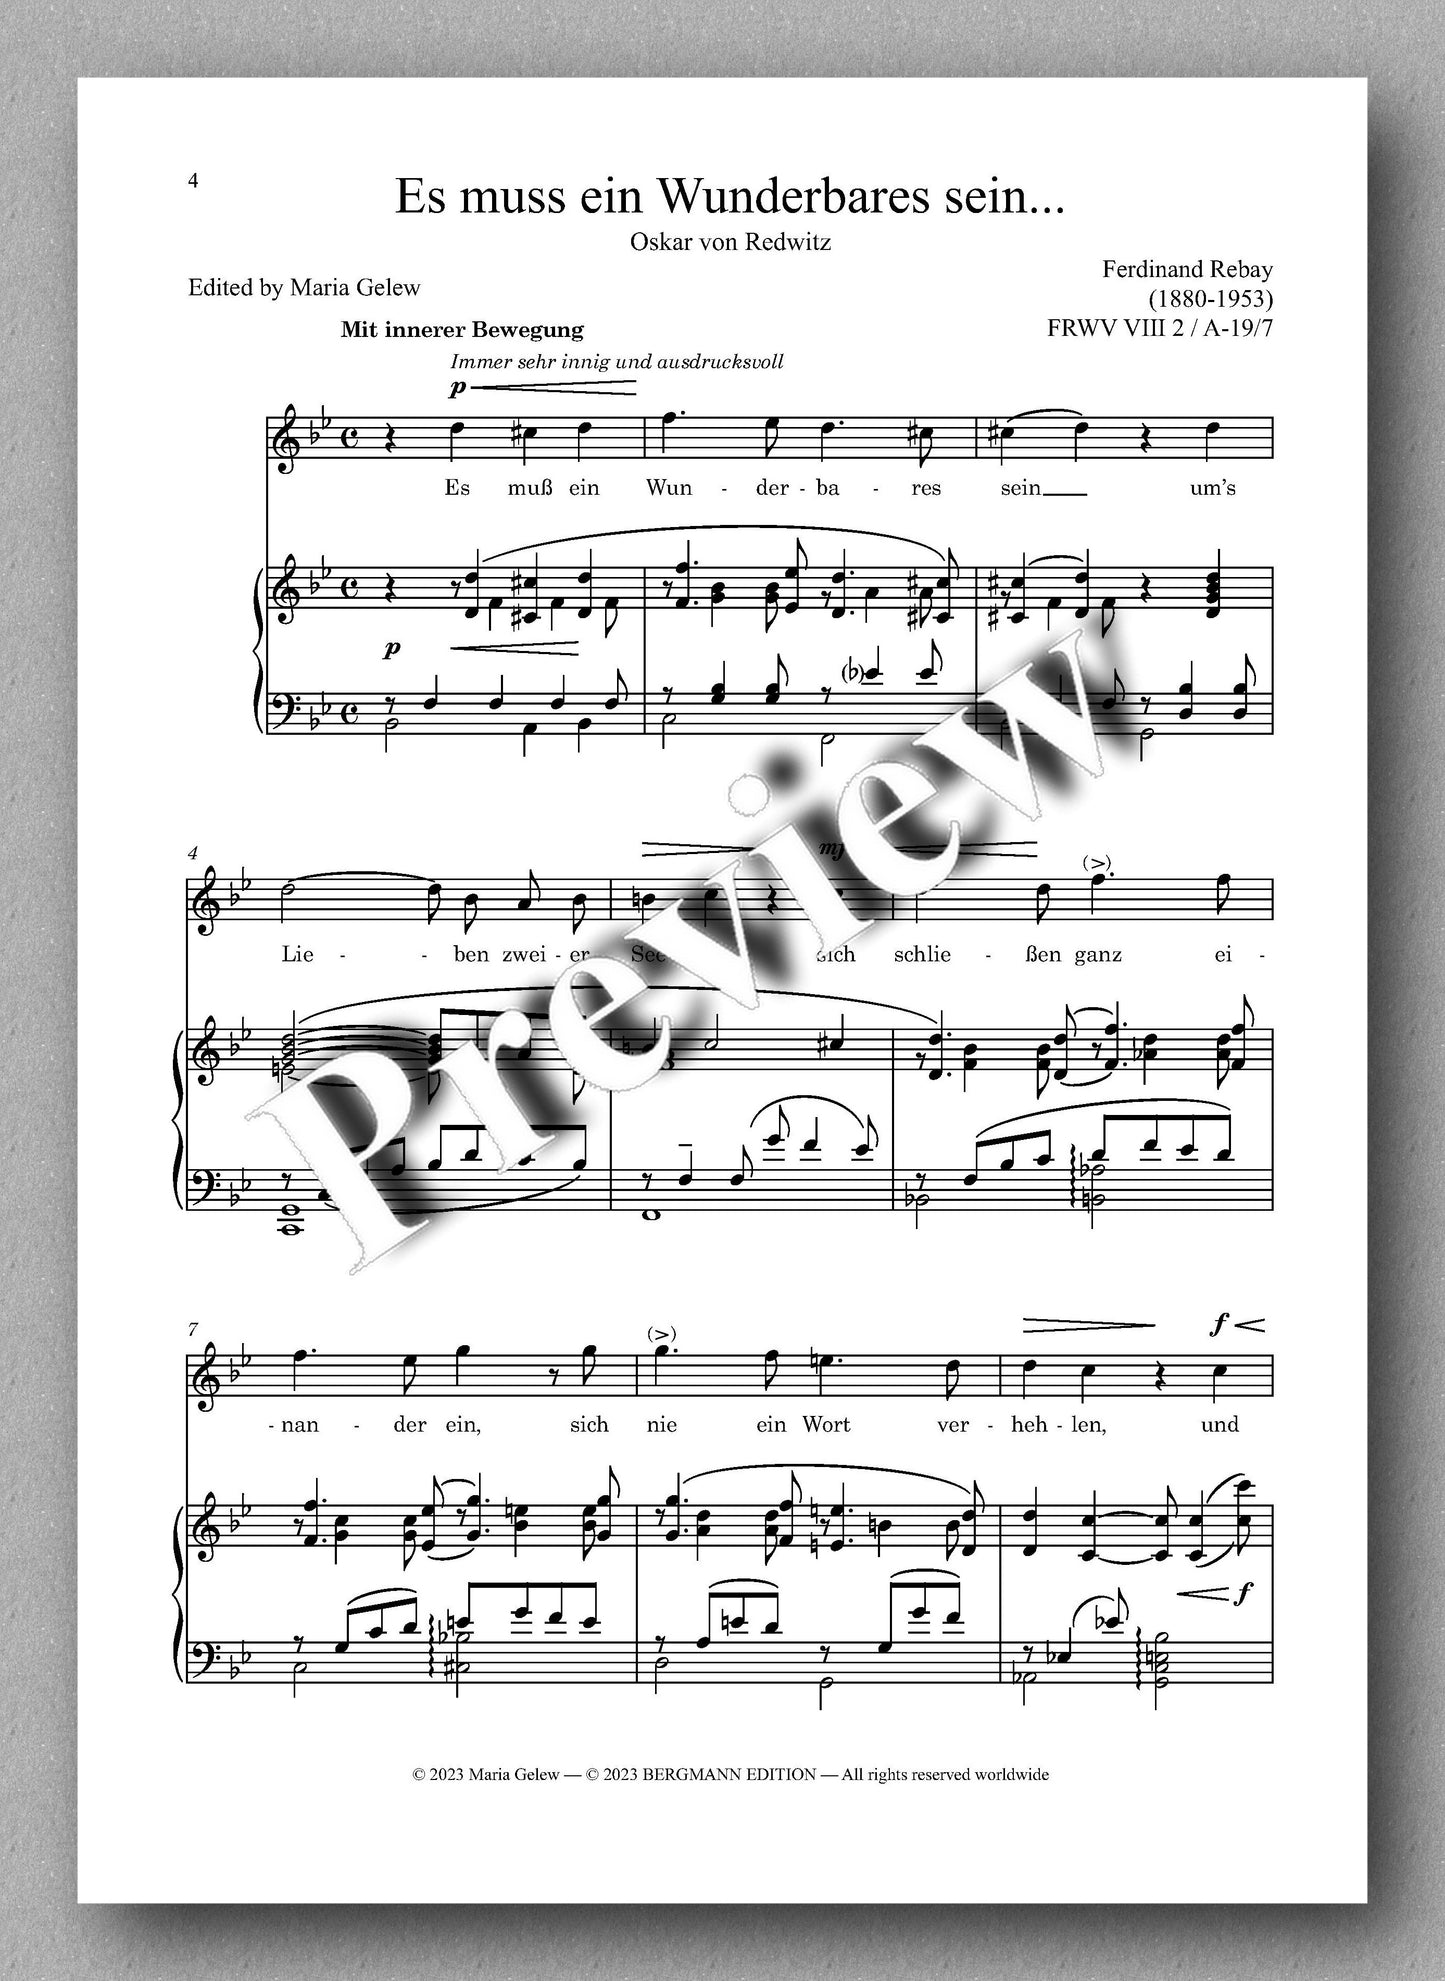 Ferdinand Rebay, Solo Lieder nach Gedichten verschiedener Dichter - preview of the music score 1